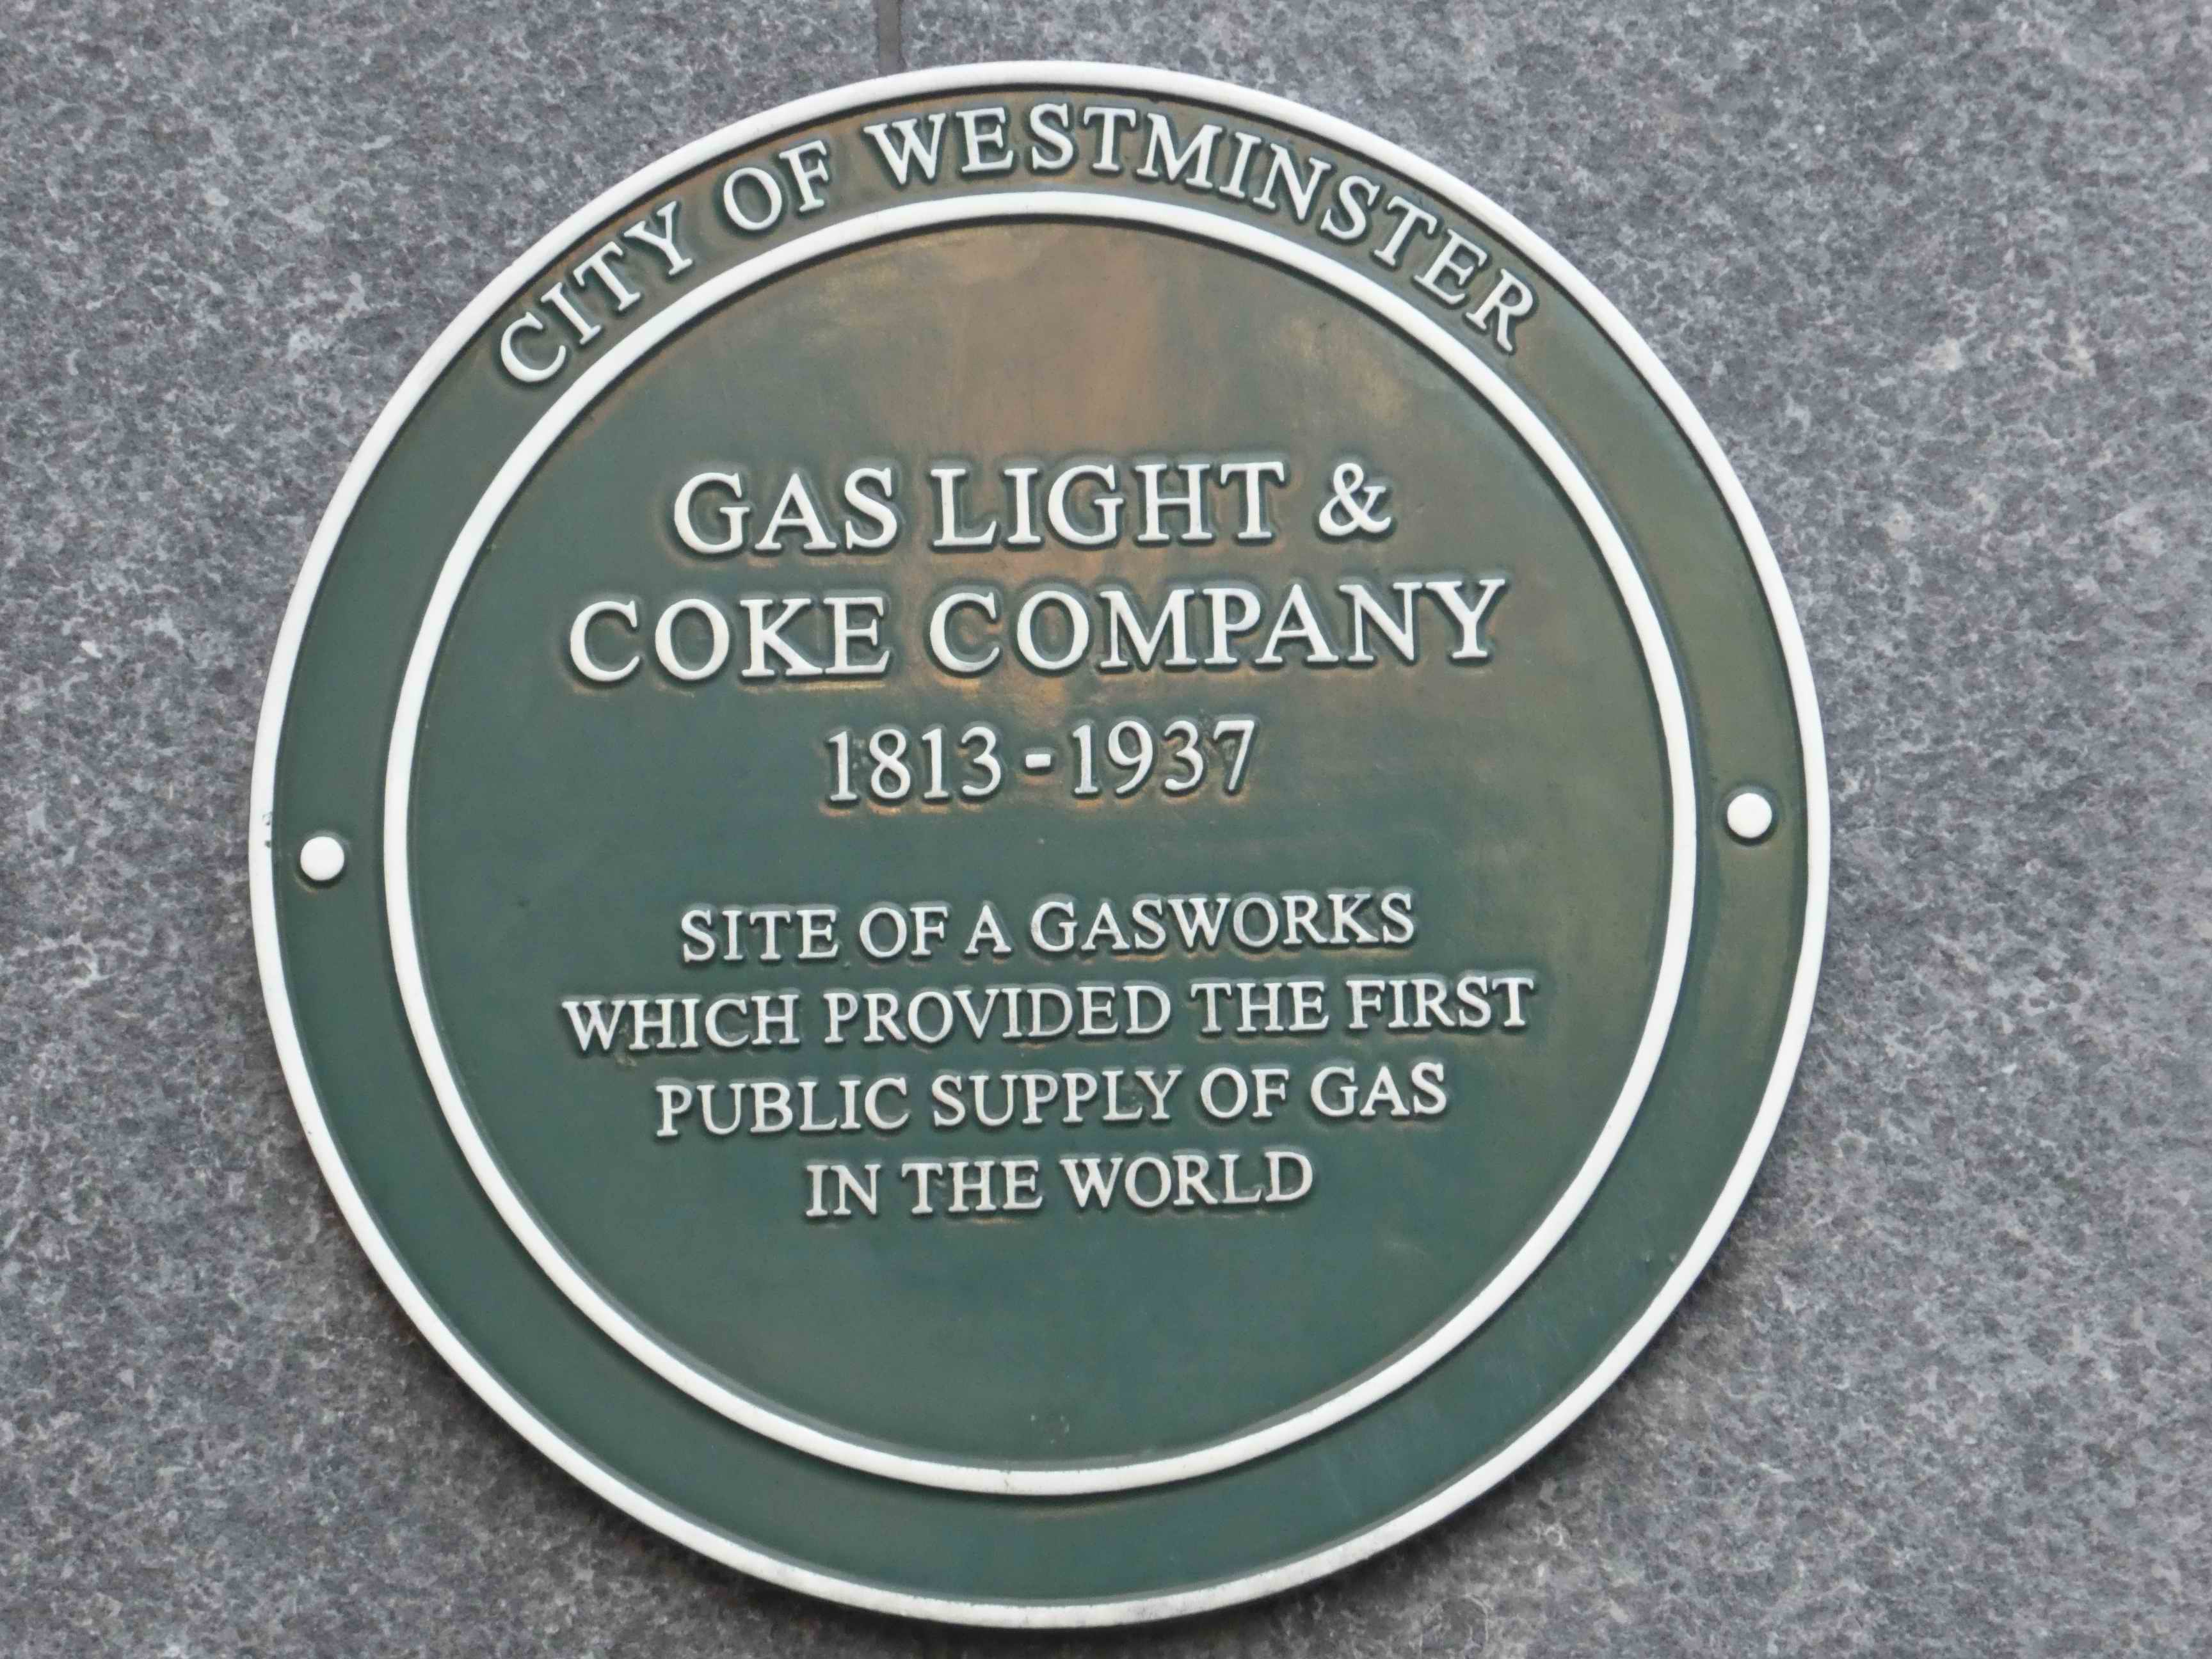 Gas Light & Coke Company plaque